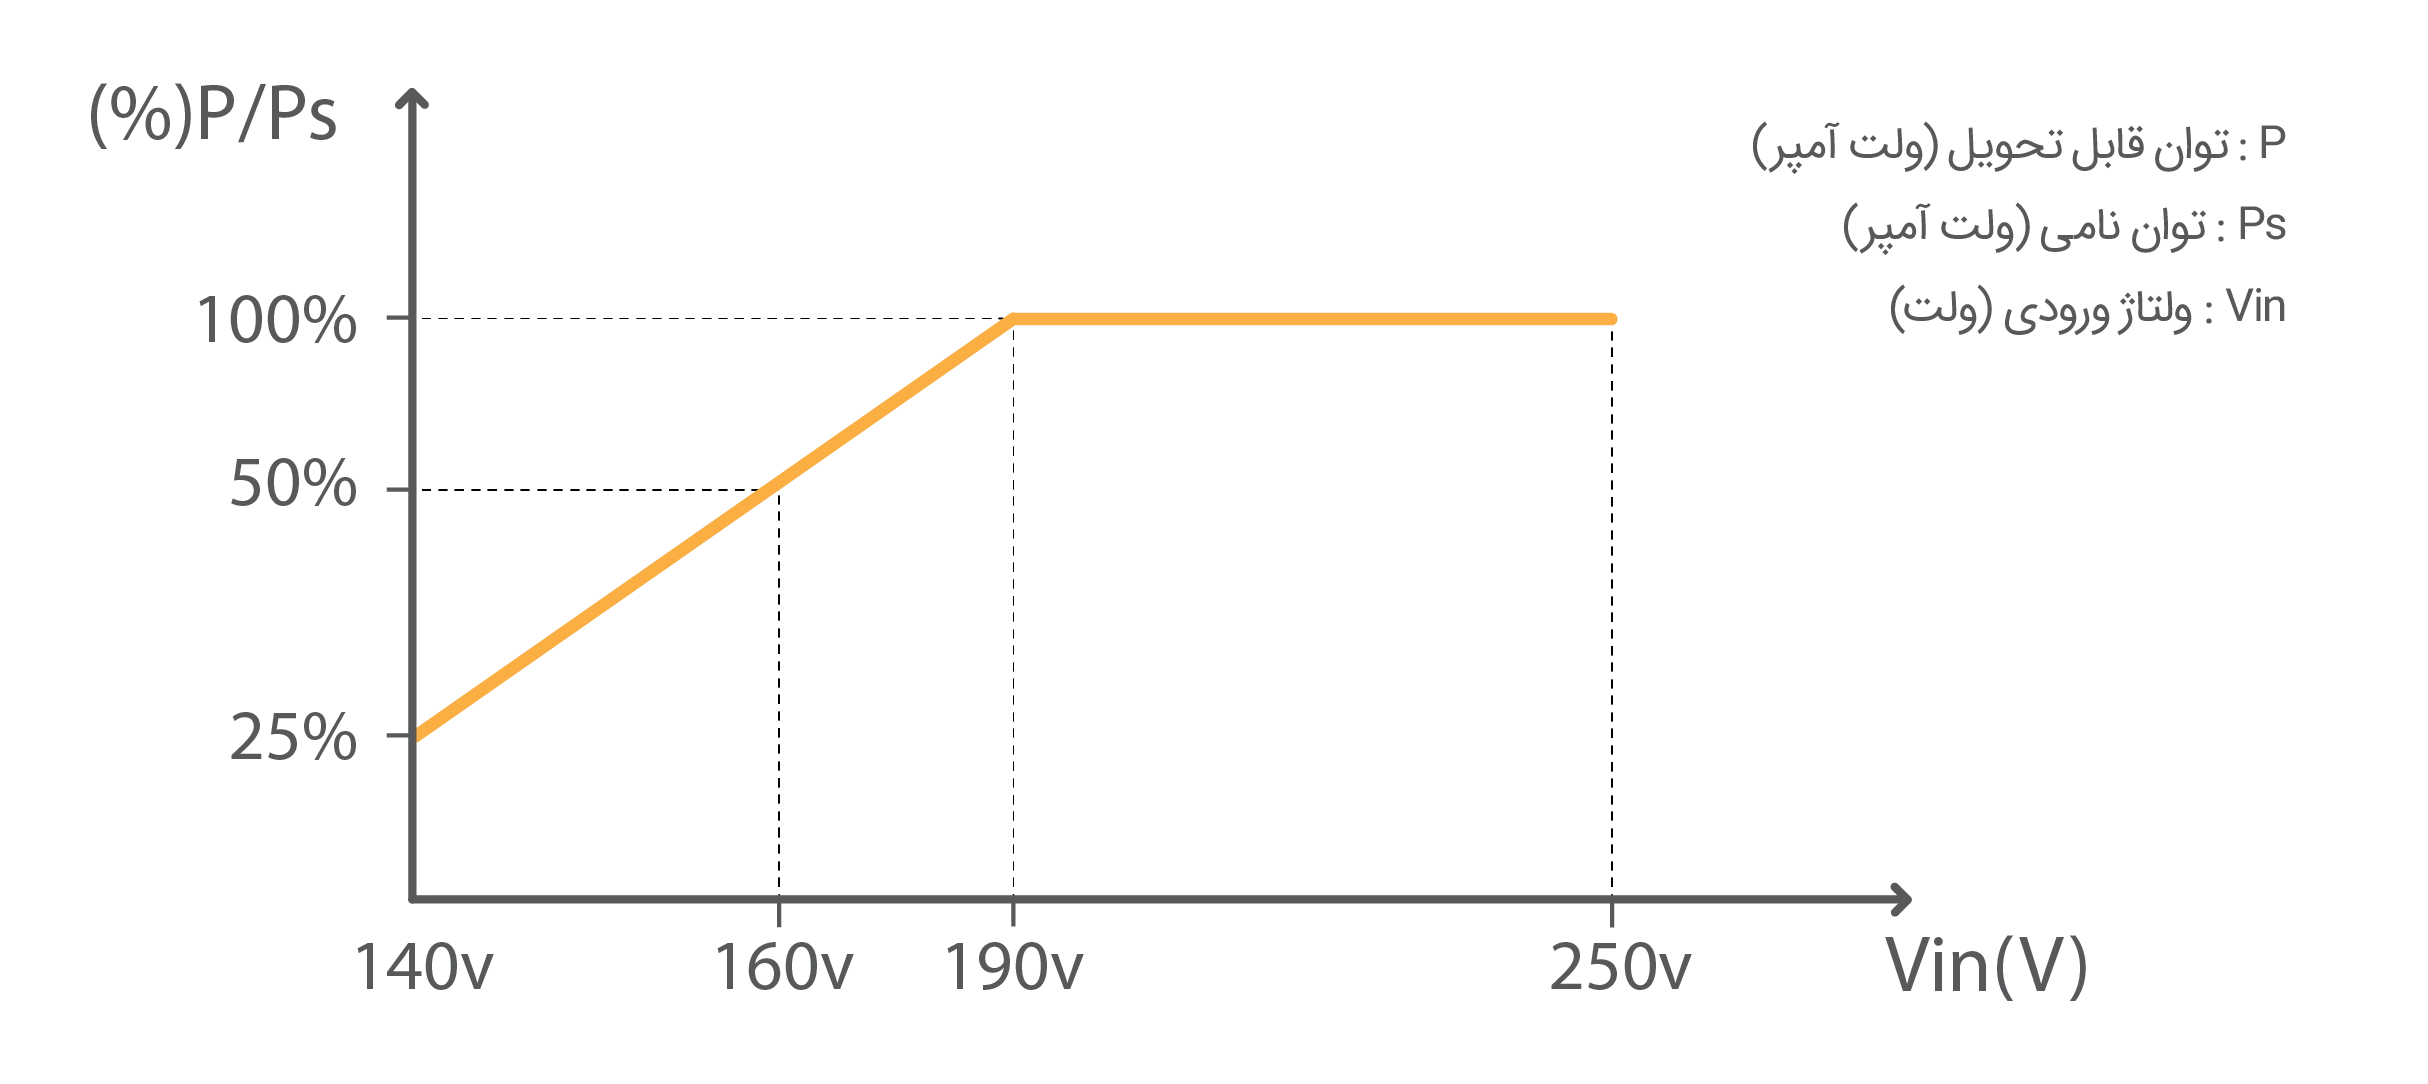 نمودار توان قابل تحویل استابلایزر تک فاز رله ای بهراد بر اساس تغییرات ولتاژ ورودی